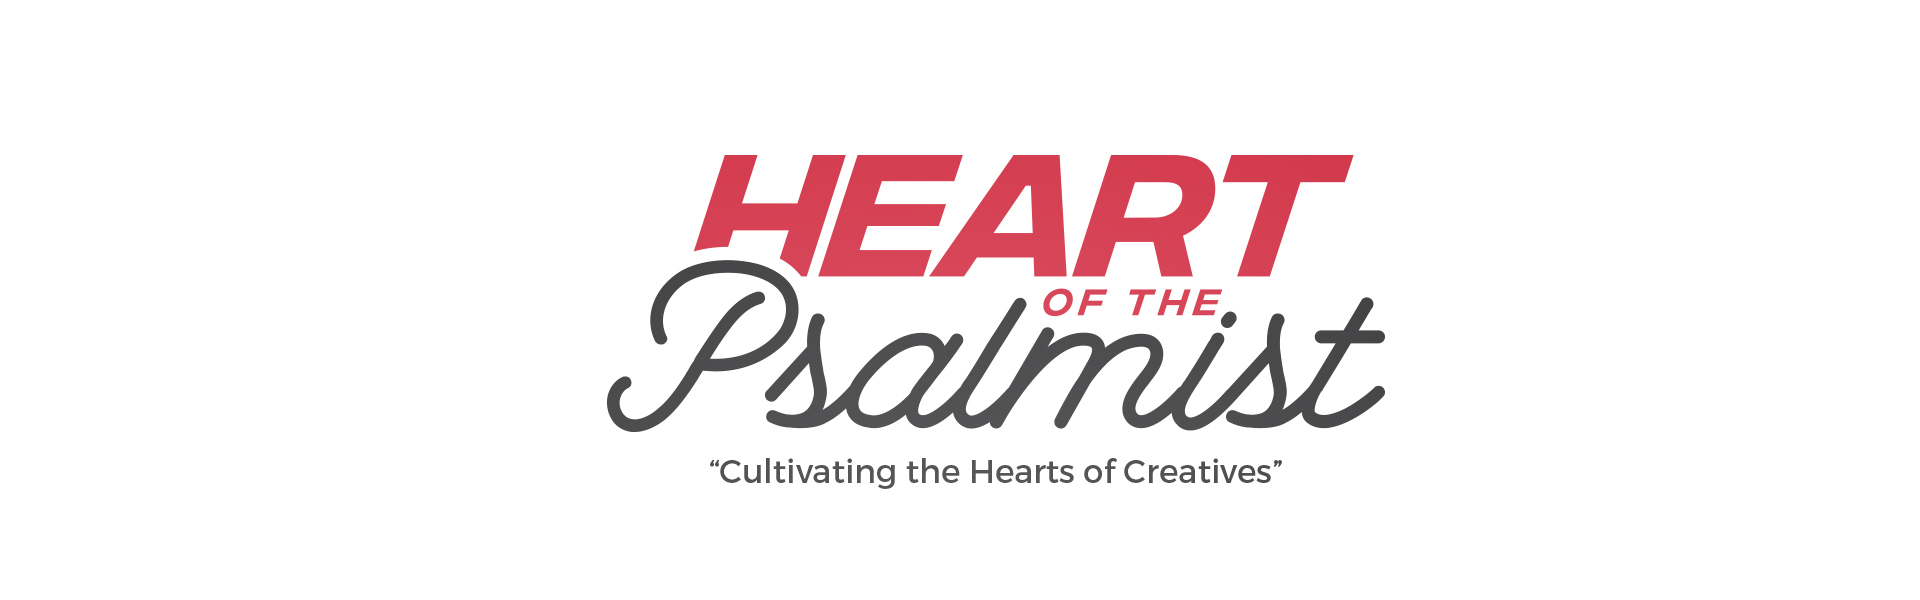 Heart of the Psalmist